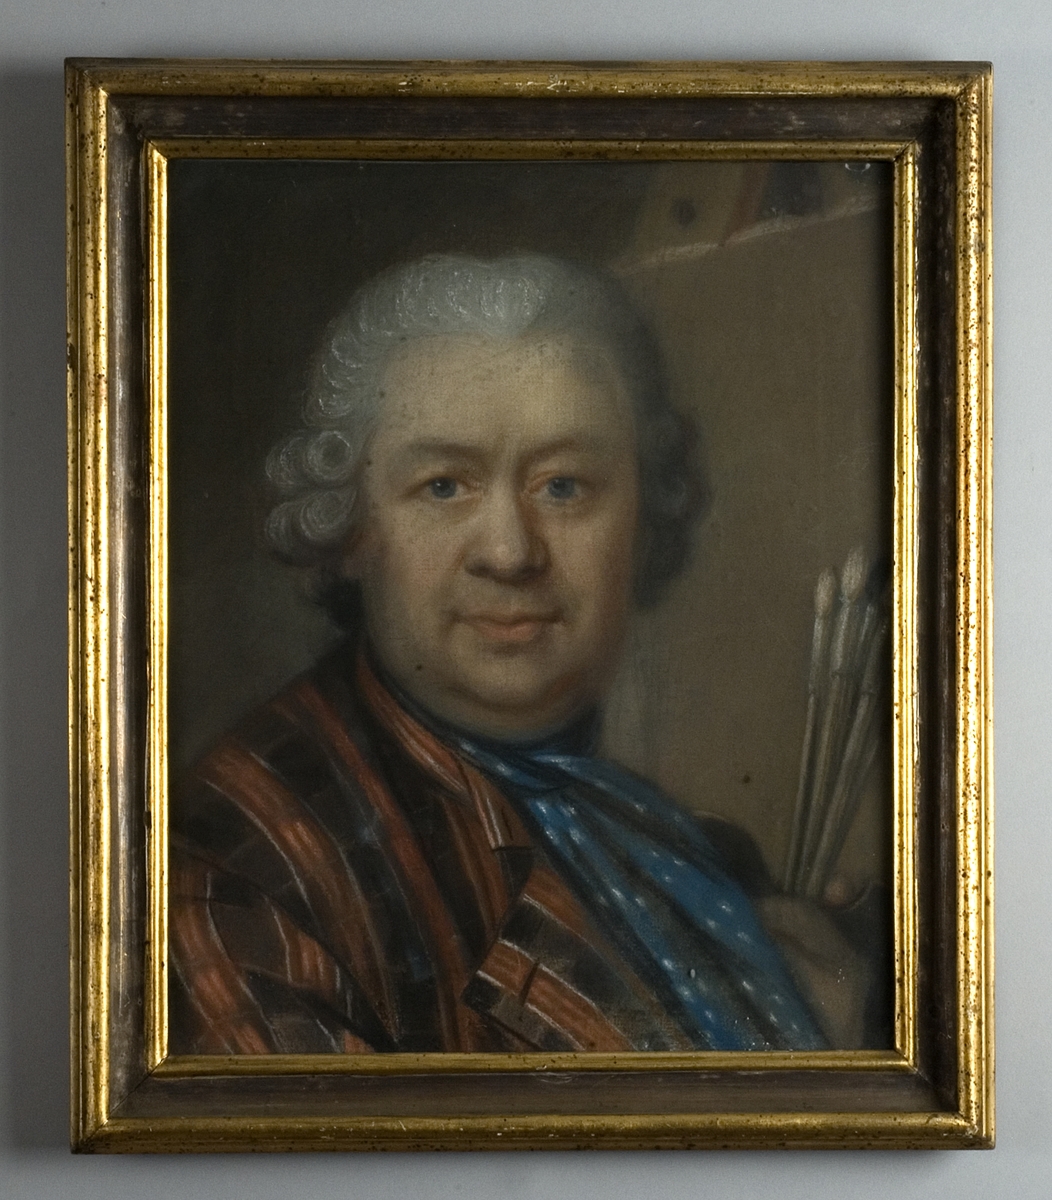 Bröstbild, en face,  av man i pudrad peruk, klädd i randig rock och blå-vit halsduk. I handen håller han ett knippe penslar.